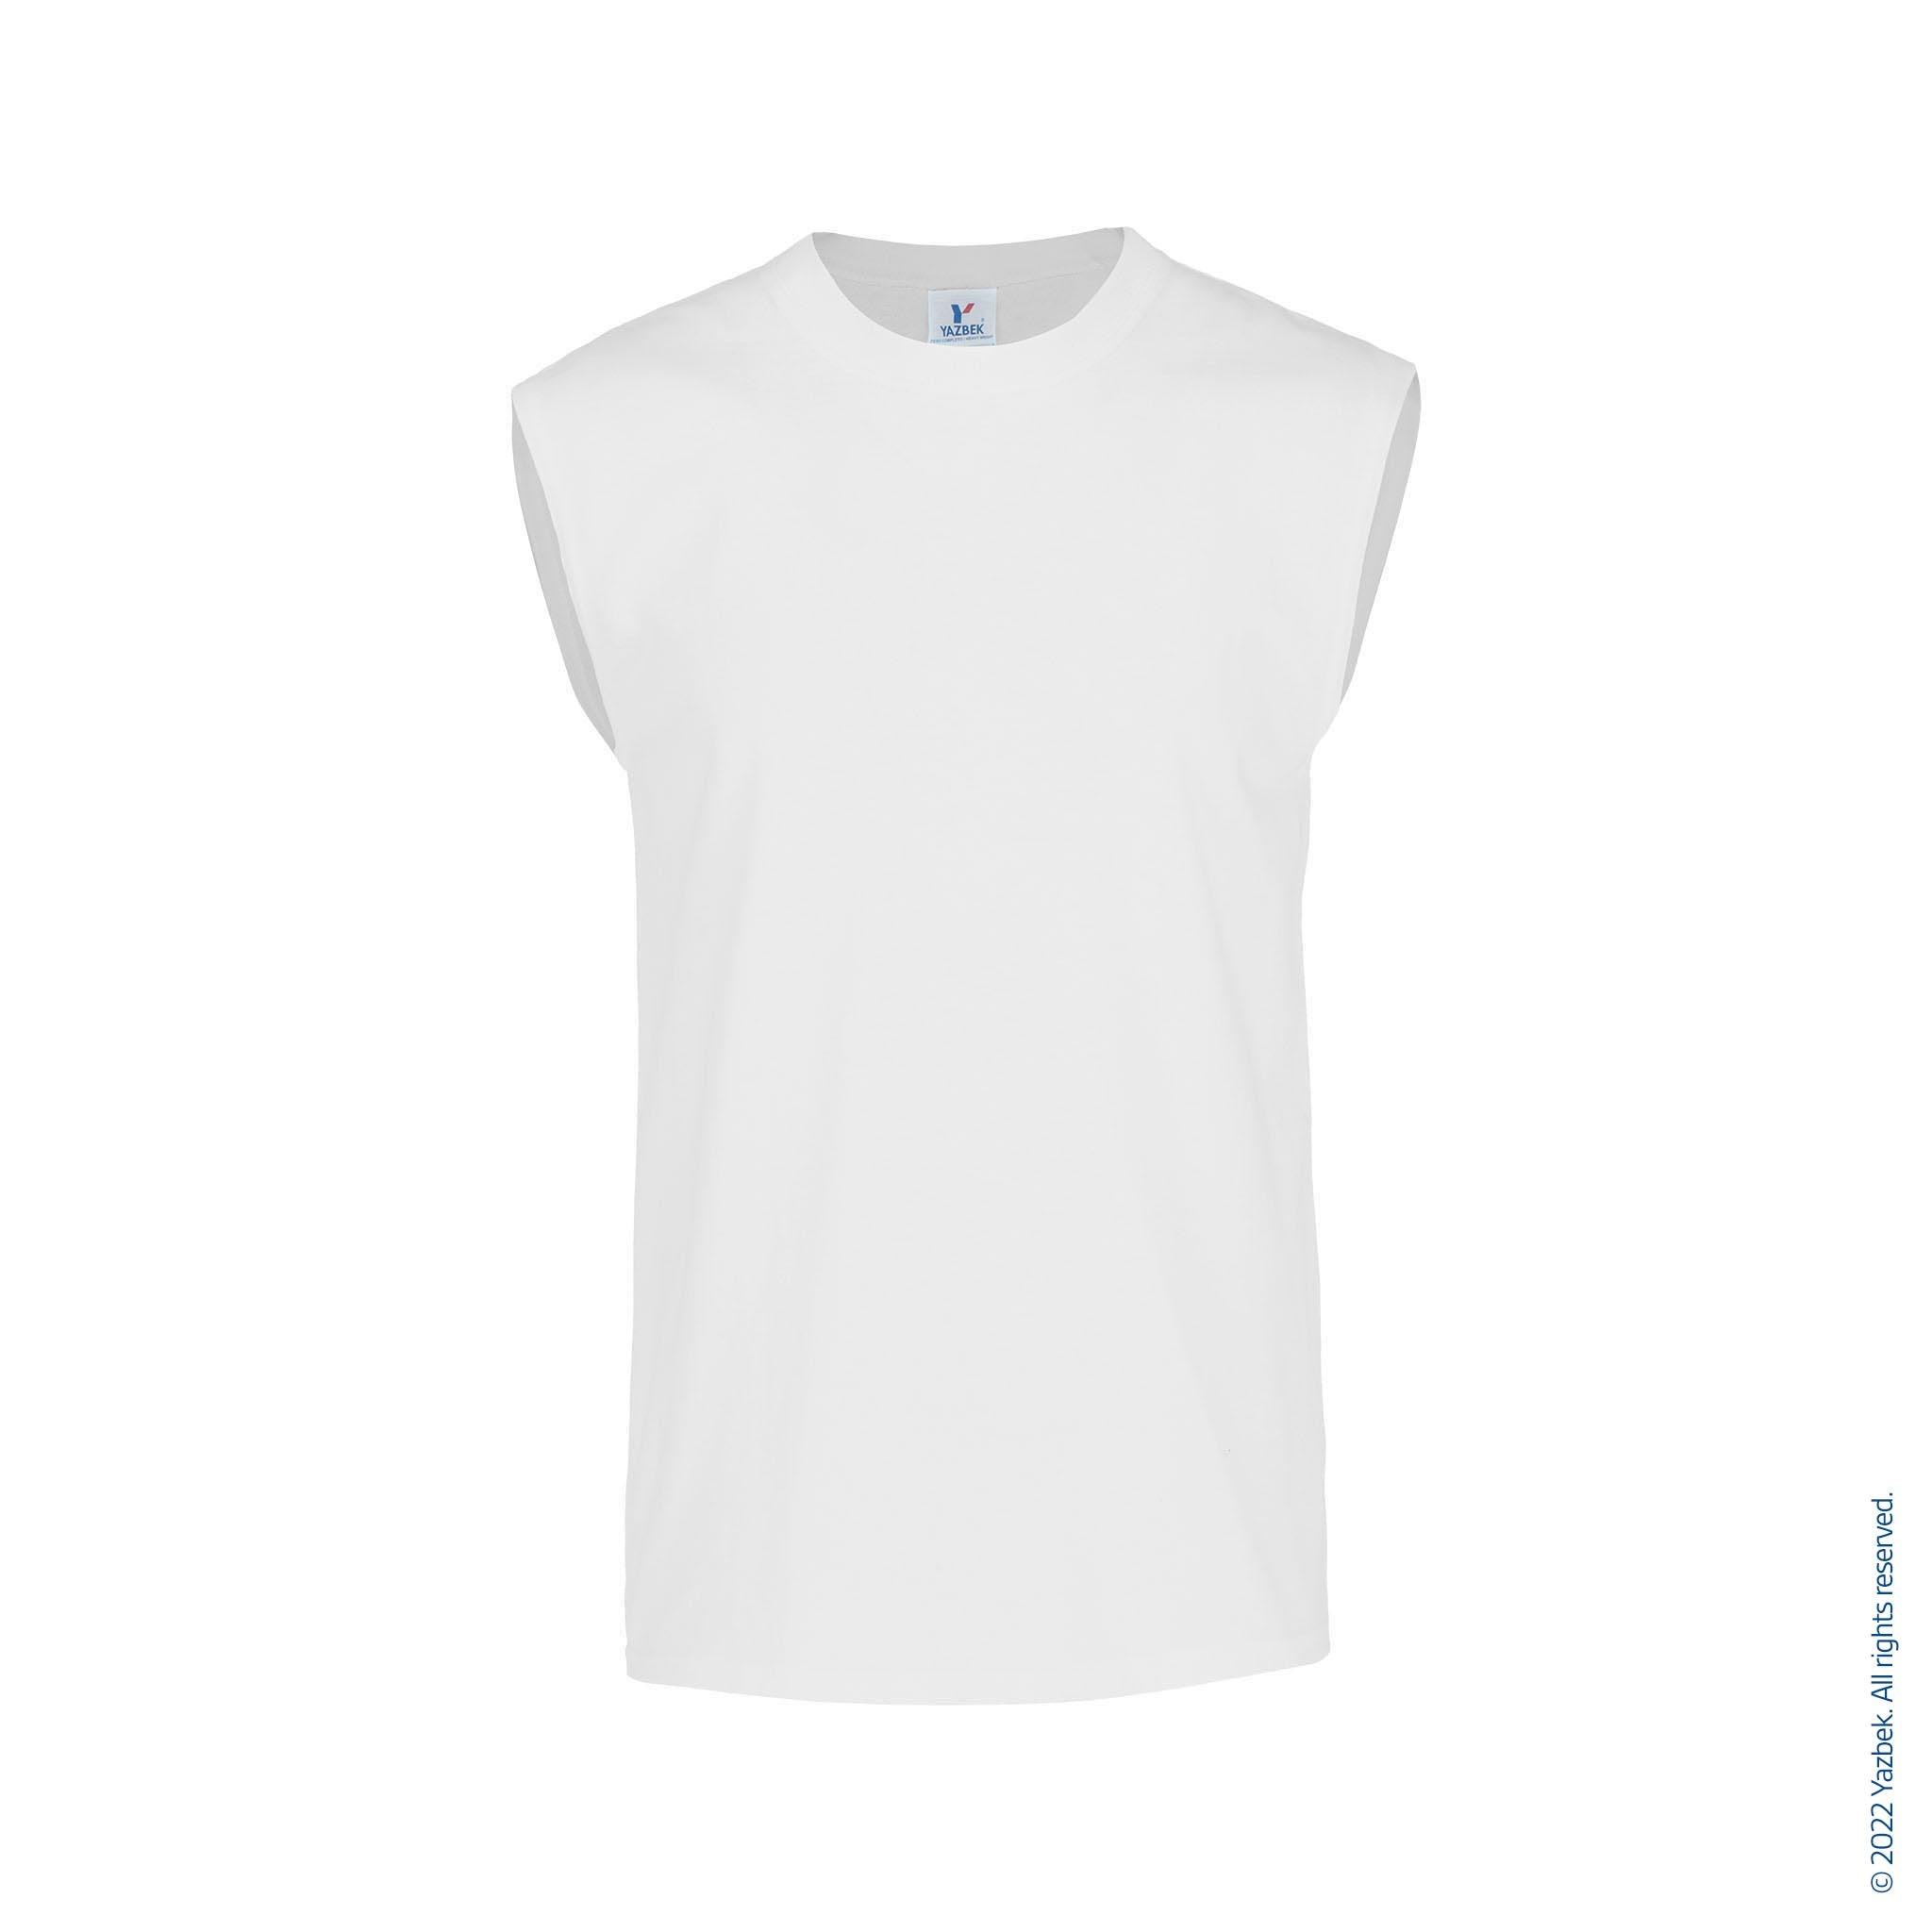 Men's Crew Neck Sleeveless T Shirt (White) – Yazbek USA Mint